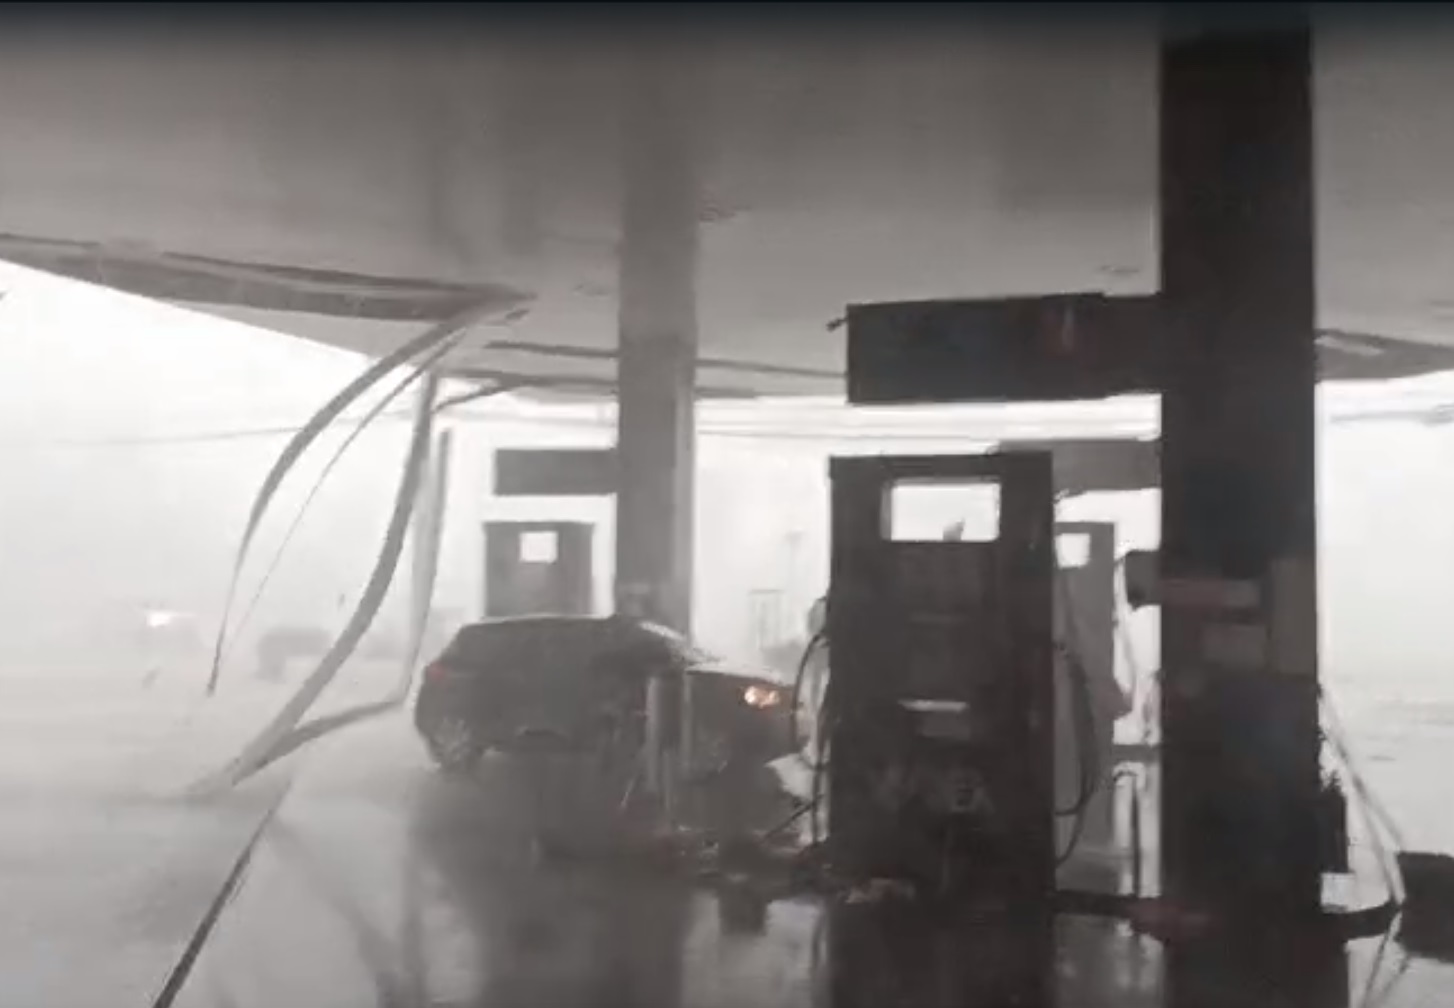  Cobertura de posto de combustíveis é arrancada pelo vento em Maringá; vídeo 